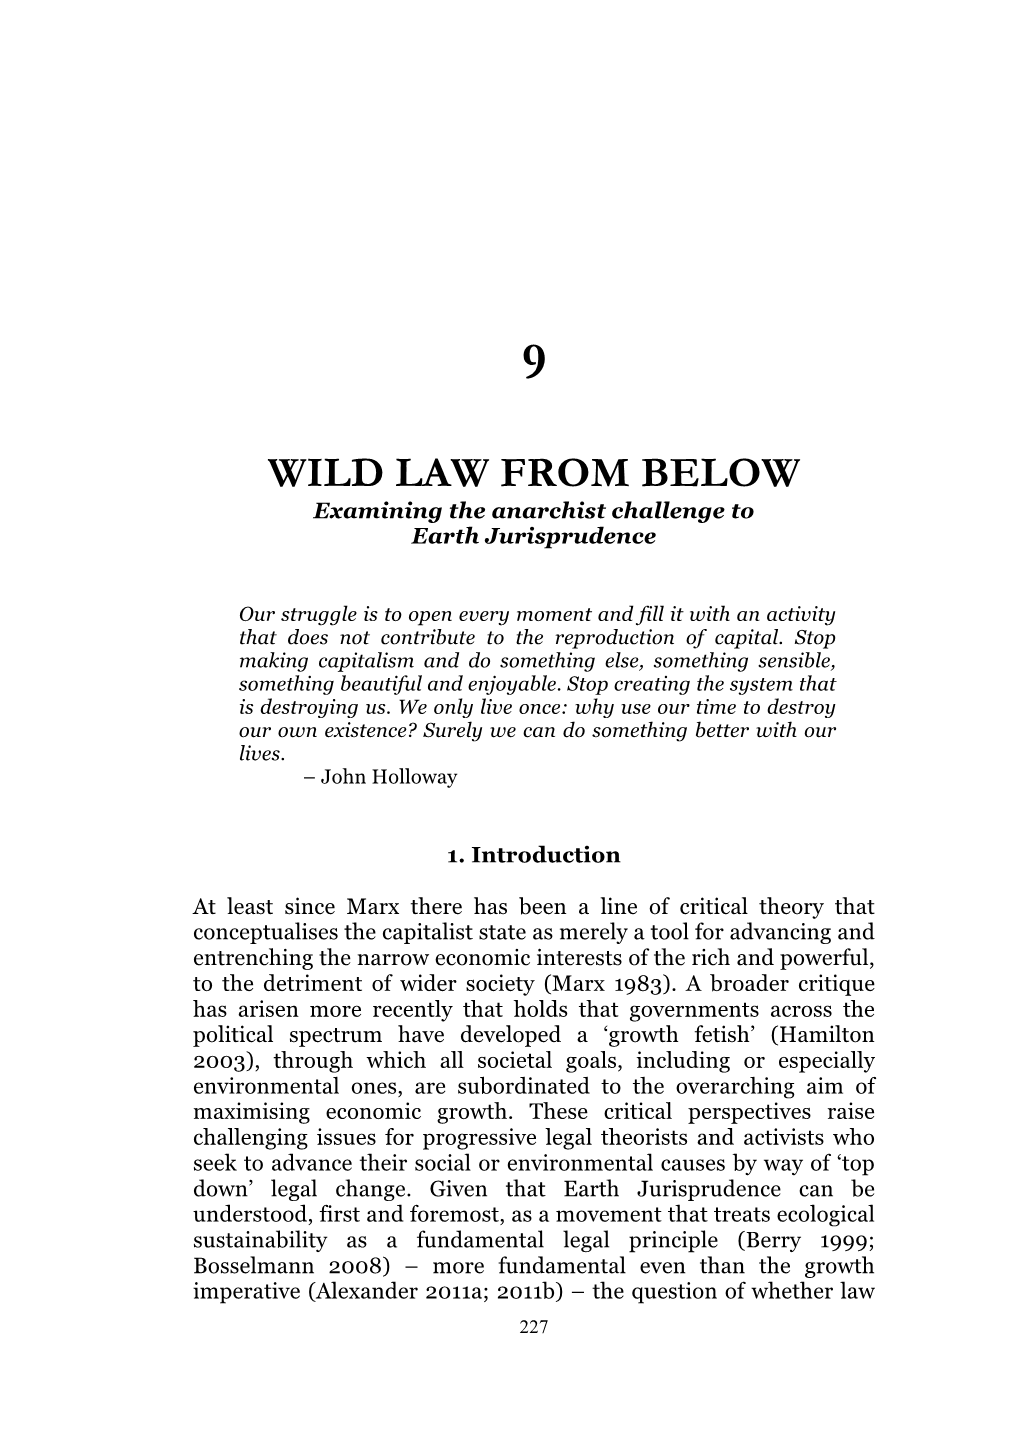 Wild Law from Below (Samuel Alexander)